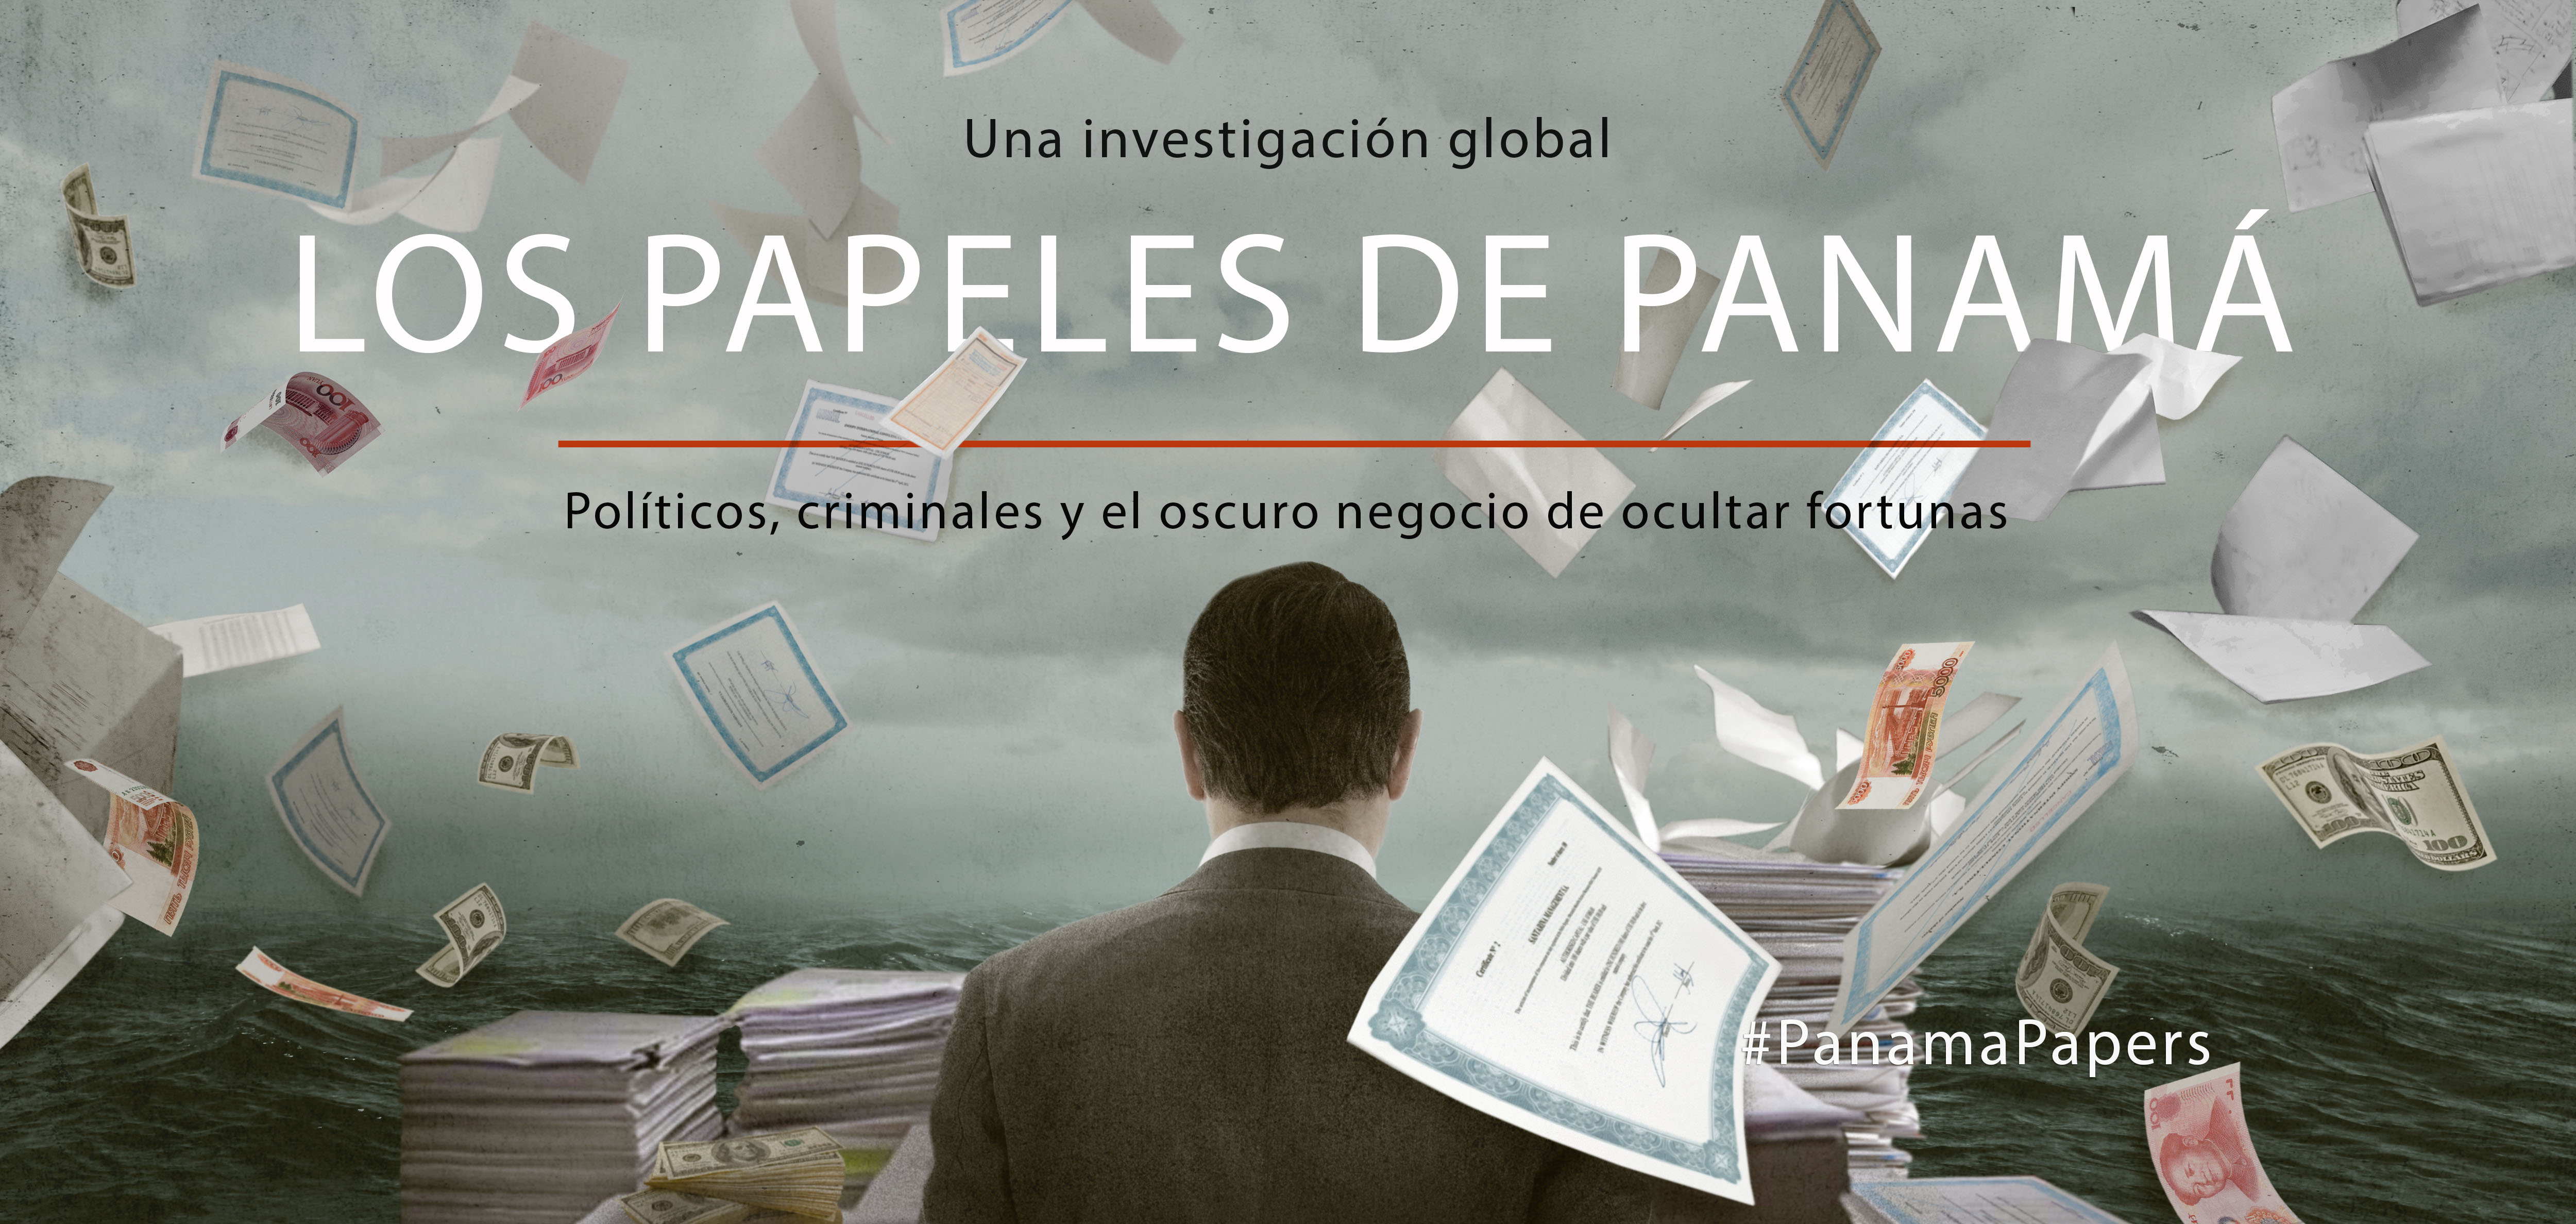 La fiscalía panameña retoma la investigación sobre los "Panama papers"